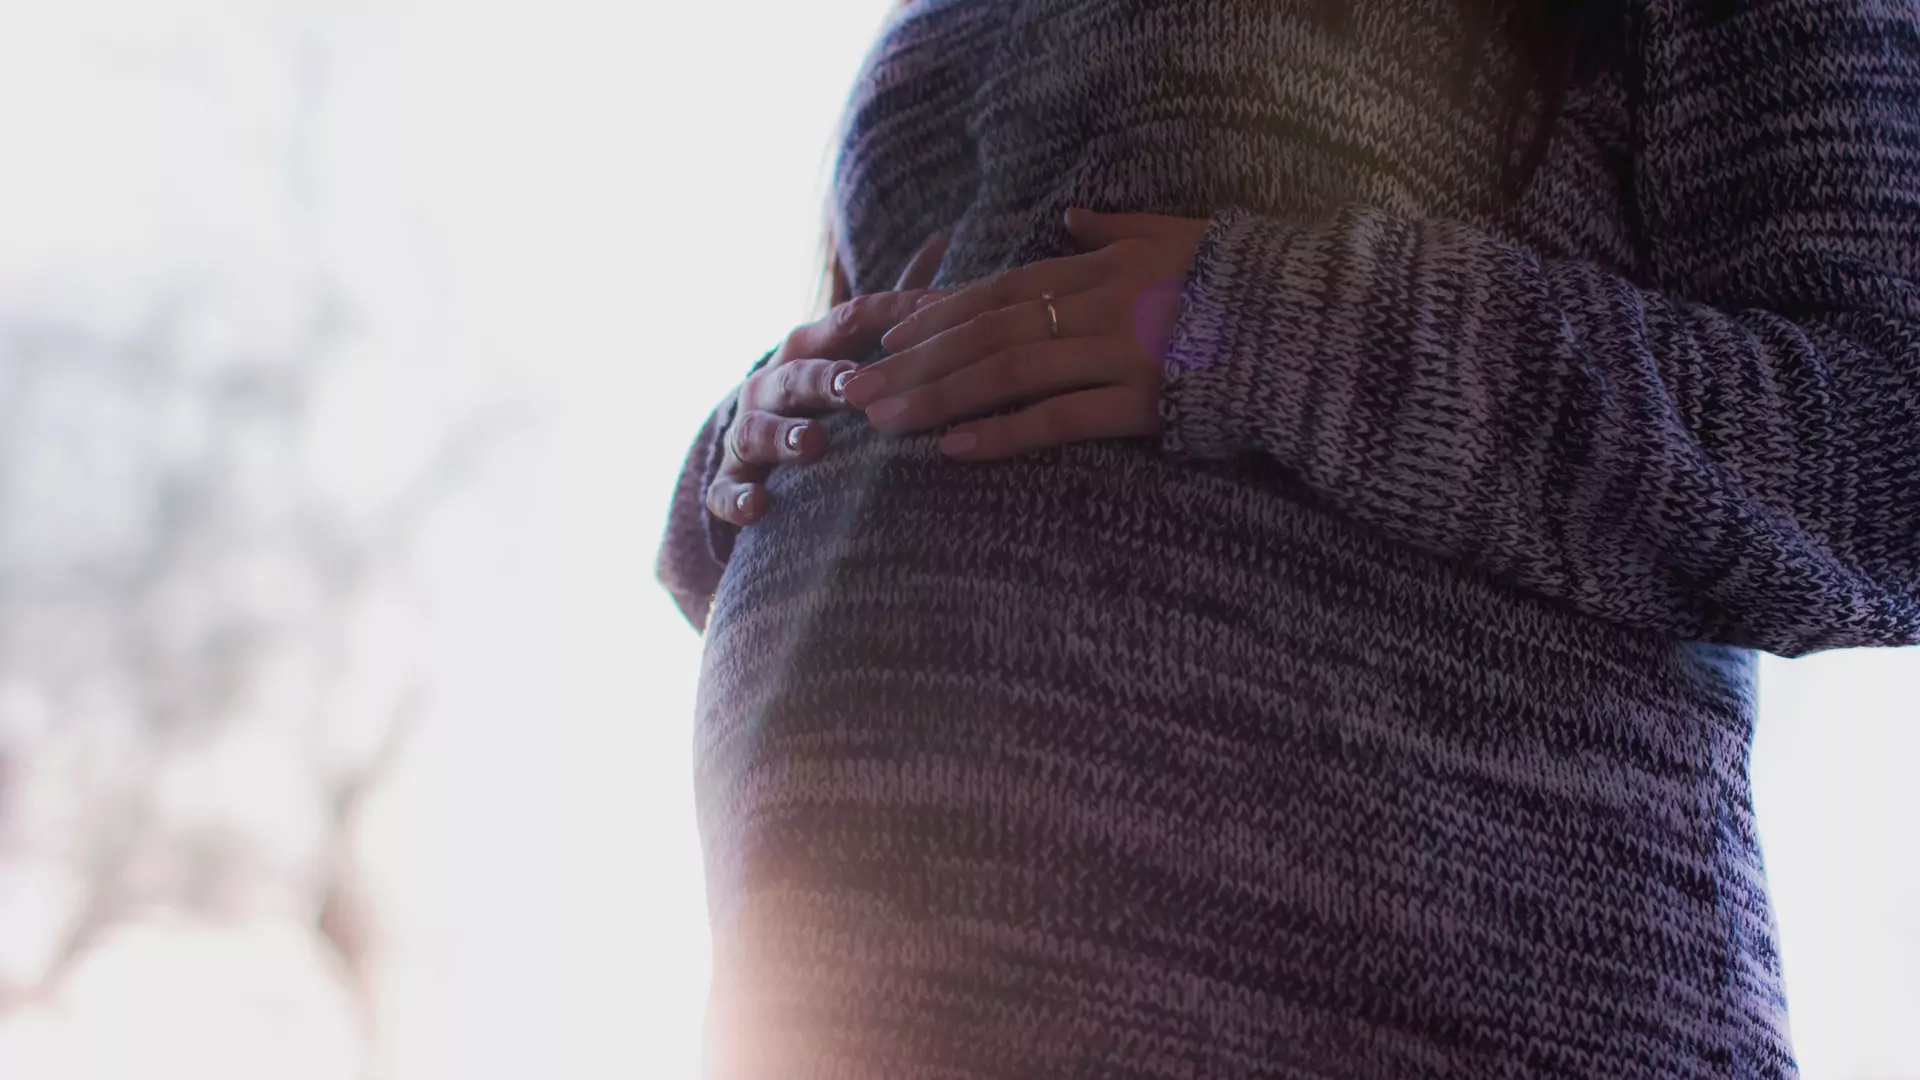 18 tydzień ciąży - brzuszek rośnie, a pamięć szwankuje